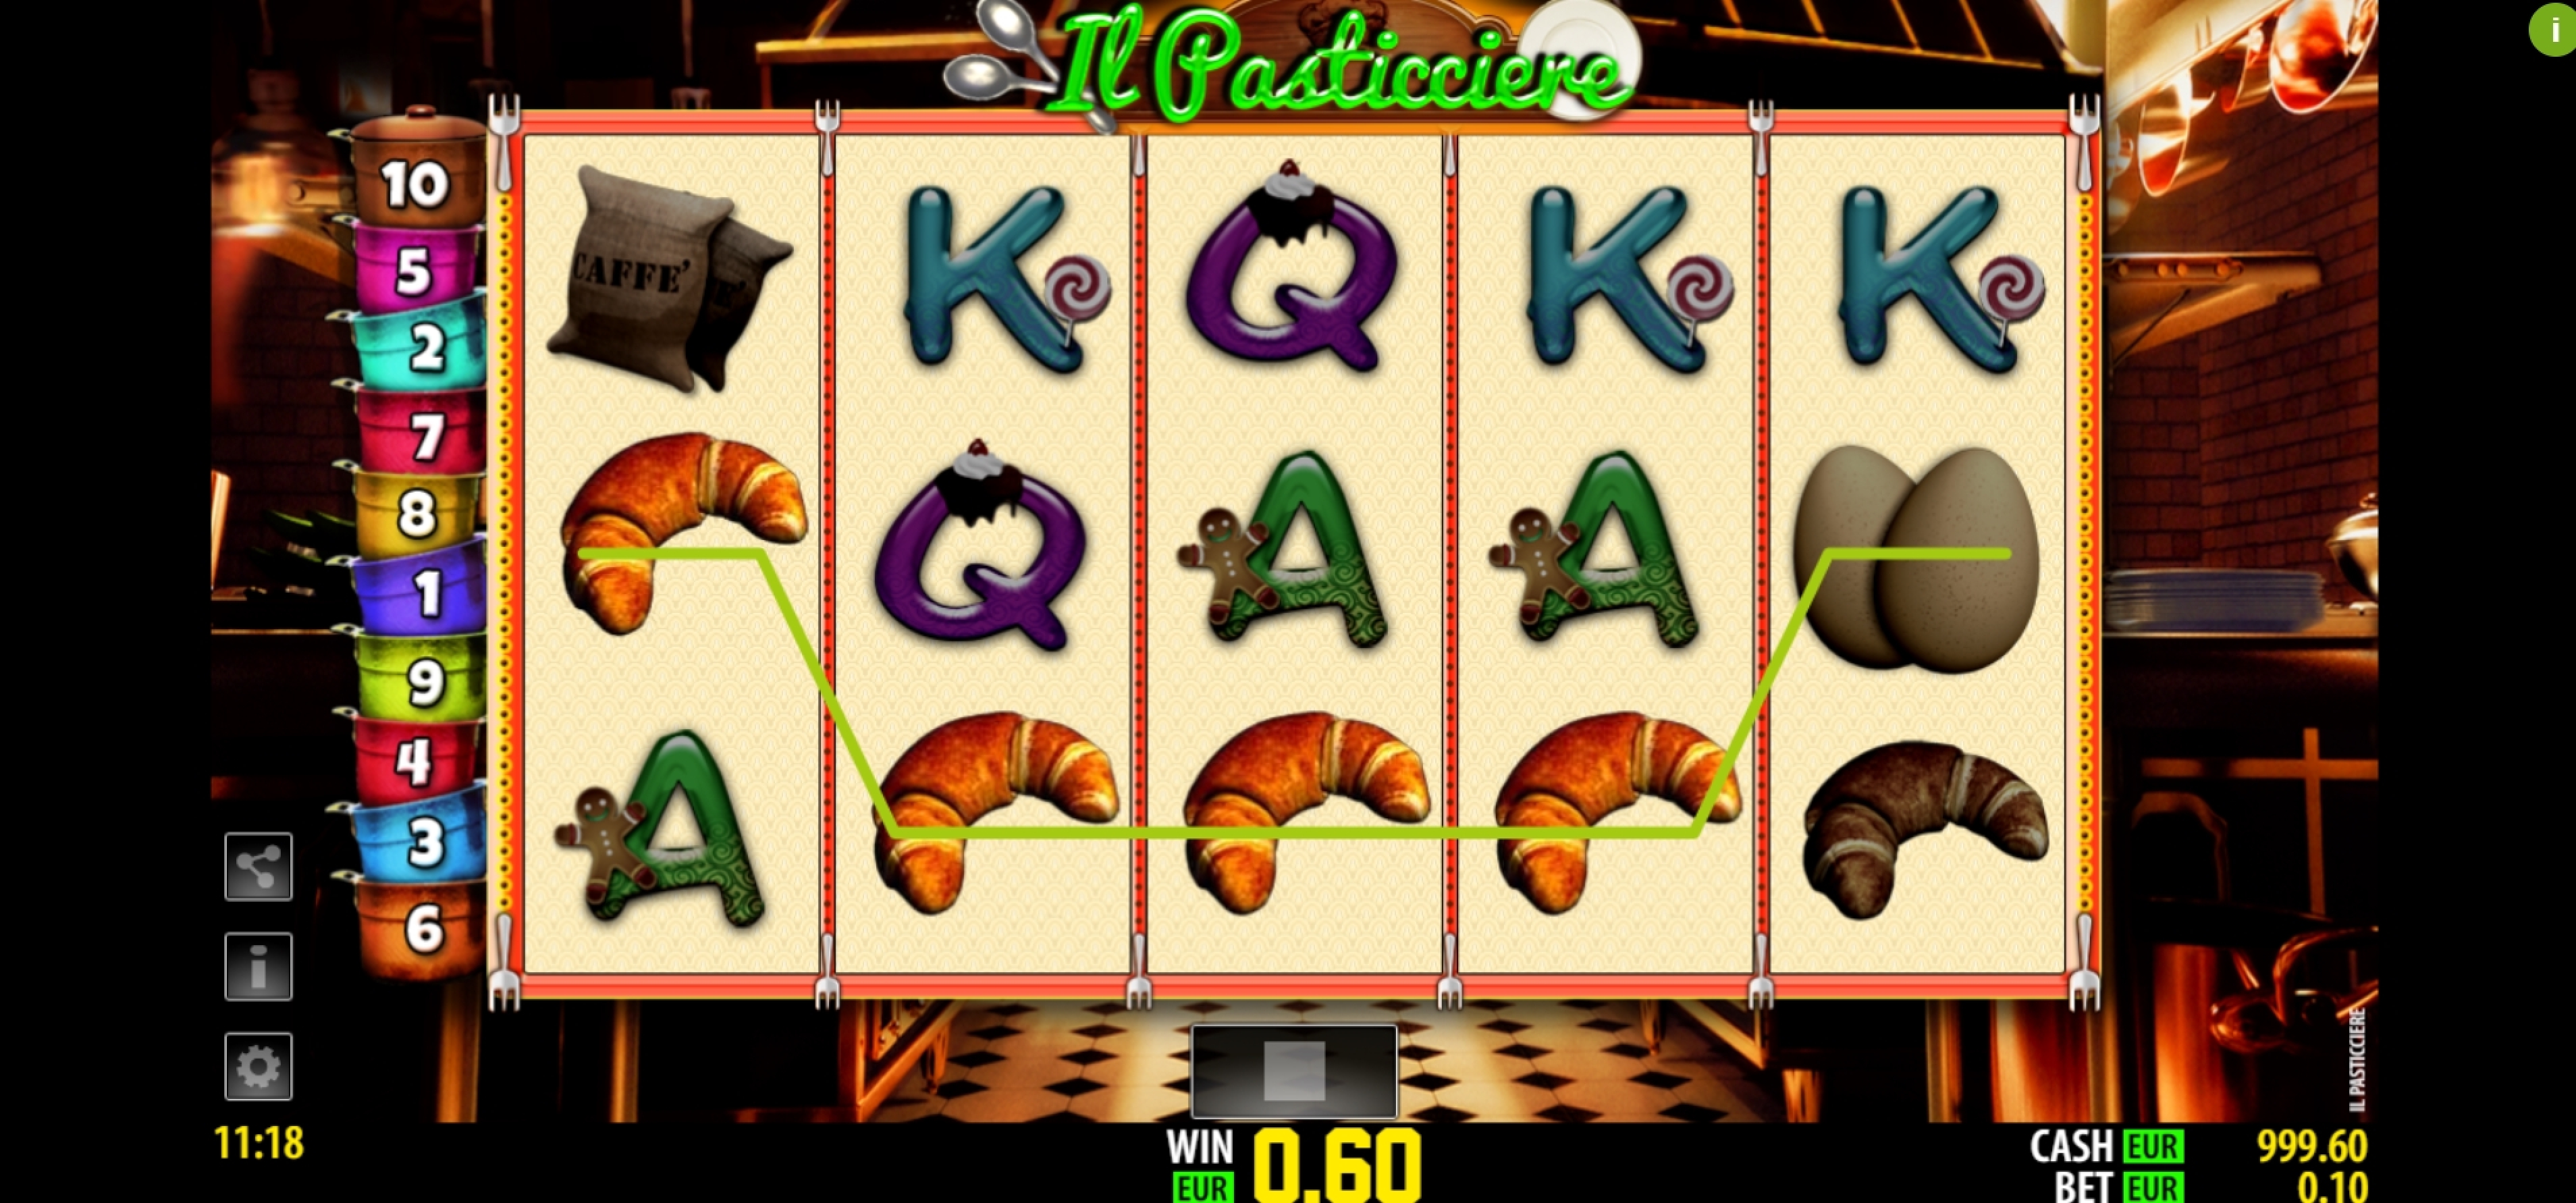 Win Money in Il Pasticciere Free Slot Game by Nazionale Elettronica